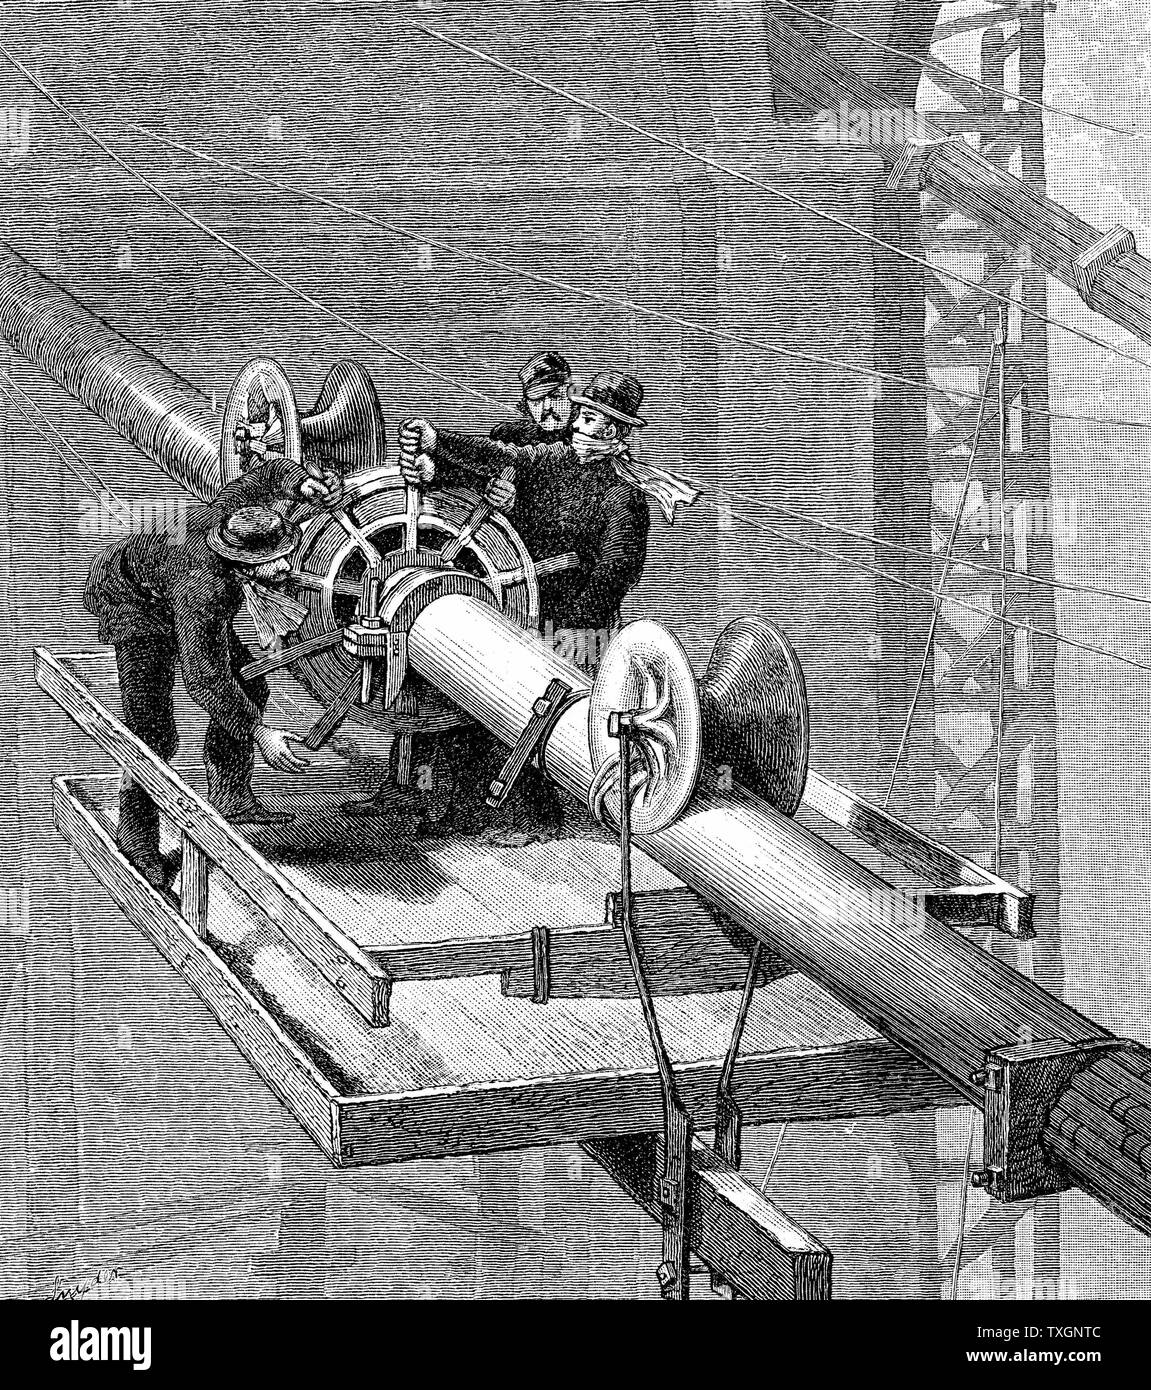 Brooklyn Suspension Bridge, New York: Kabel wickelt sich um die Seilzüge zur Aufhängung, die jeweils mehr als 5.000 einzelne Strähnen gemacht wurde. Holzstich veröffentlicht 1883, das Jahr, in dem die Brücke eröffnet. Entworfen und gebaut von J.A. und W.A. Roebling. Stockfoto